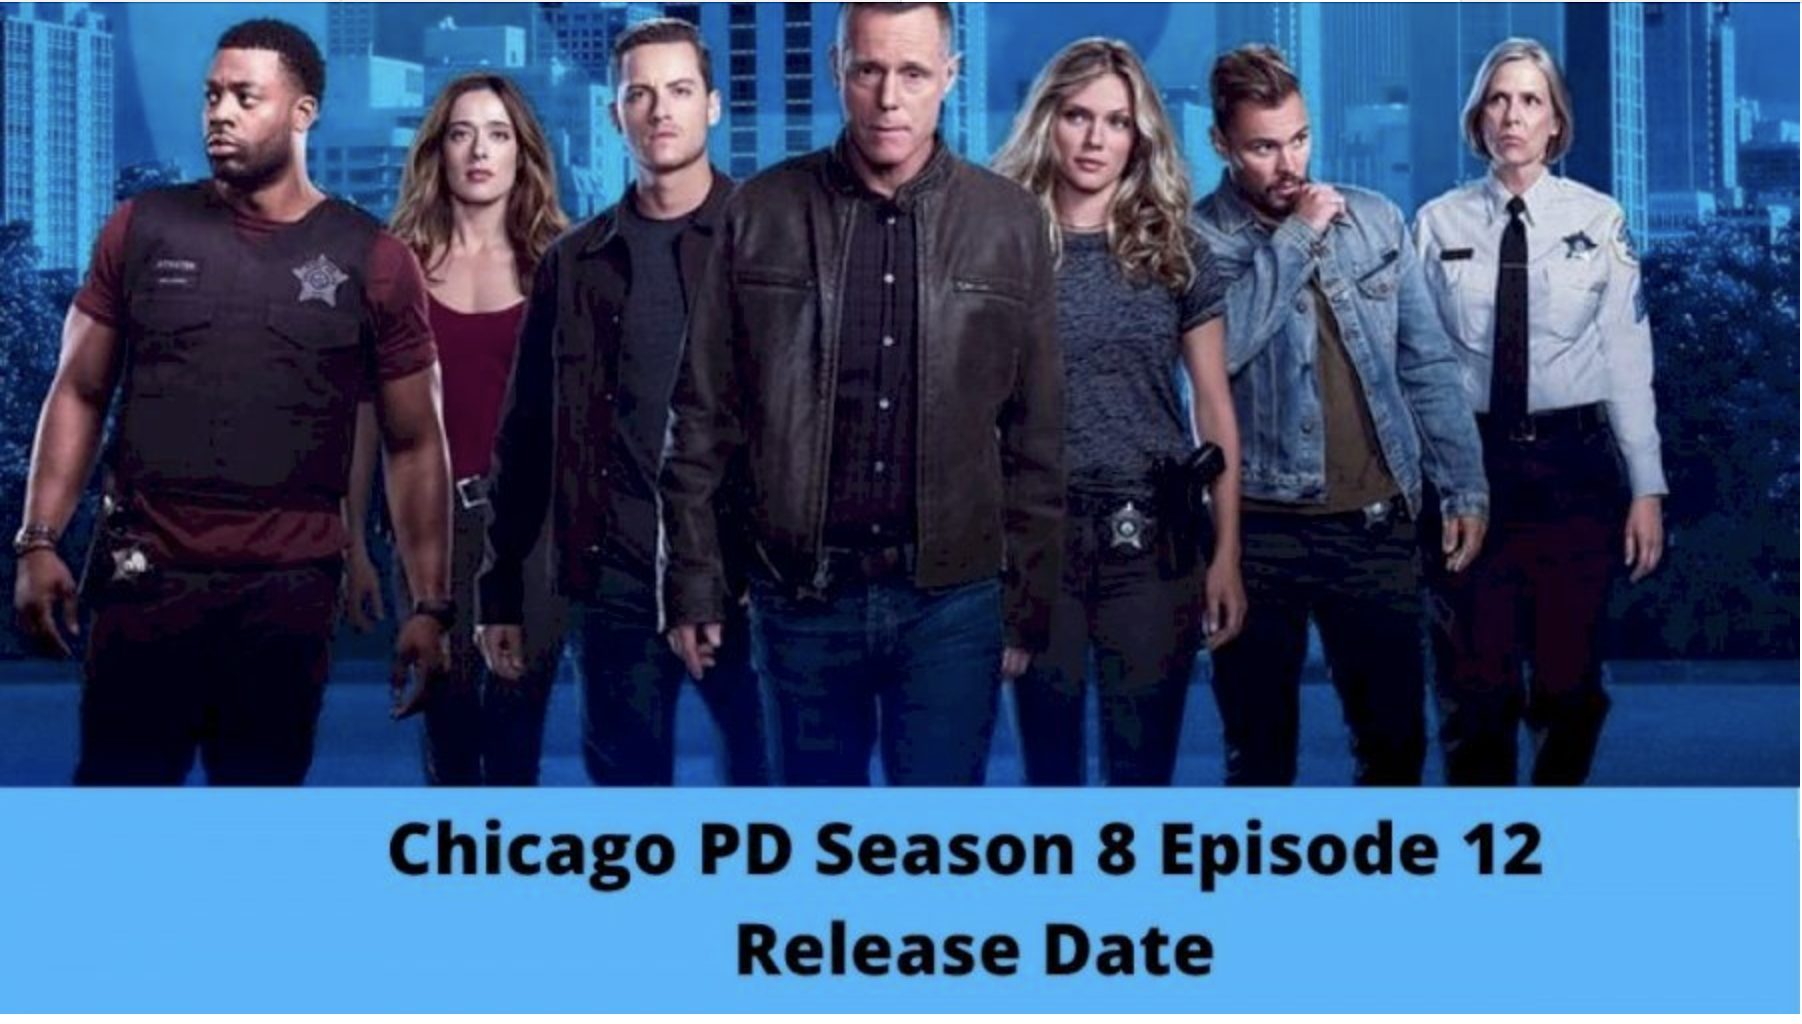 Chicago PD Season 8 Episode 12